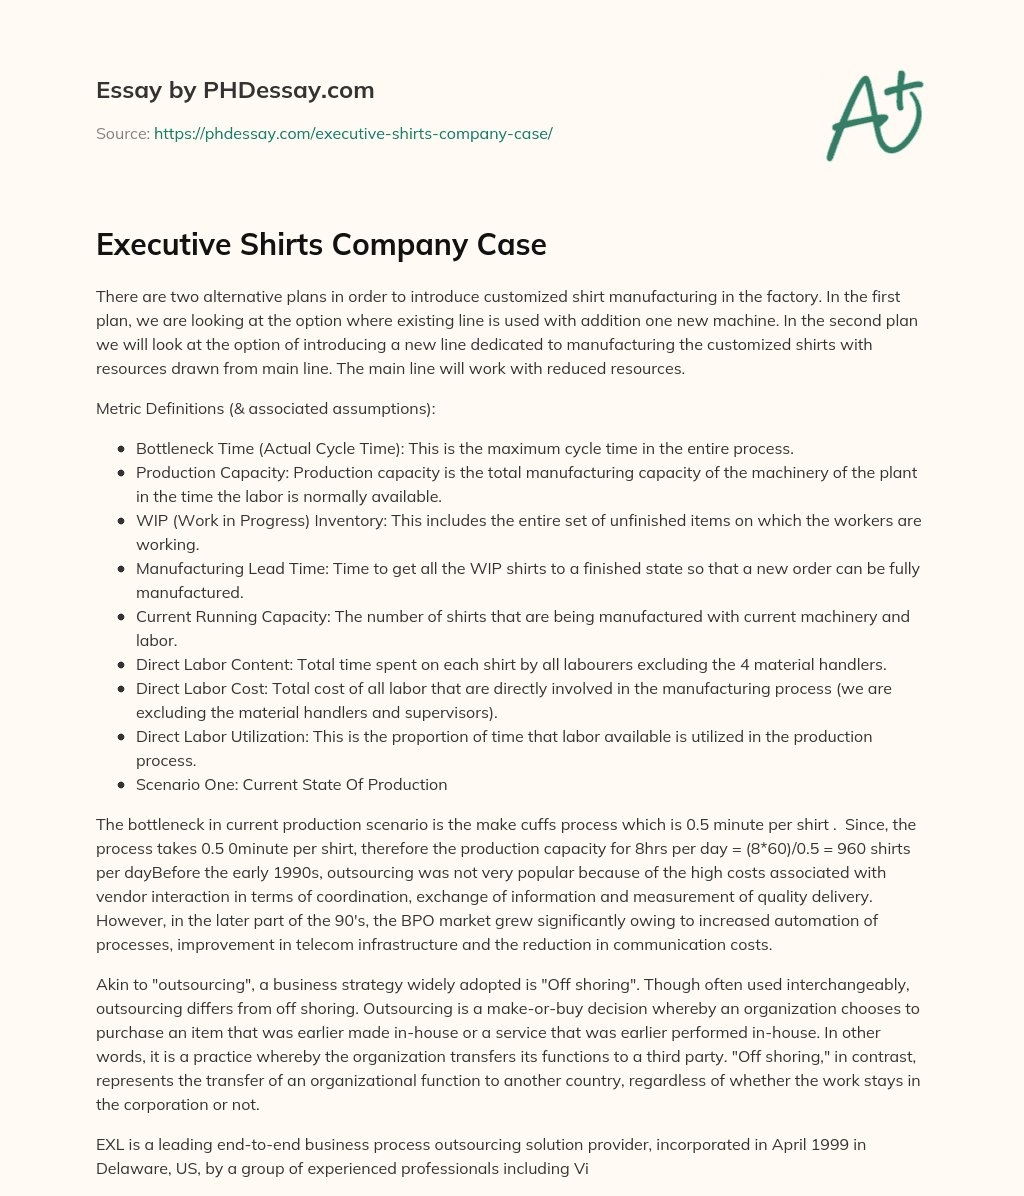 Executive Shirts Company Case essay